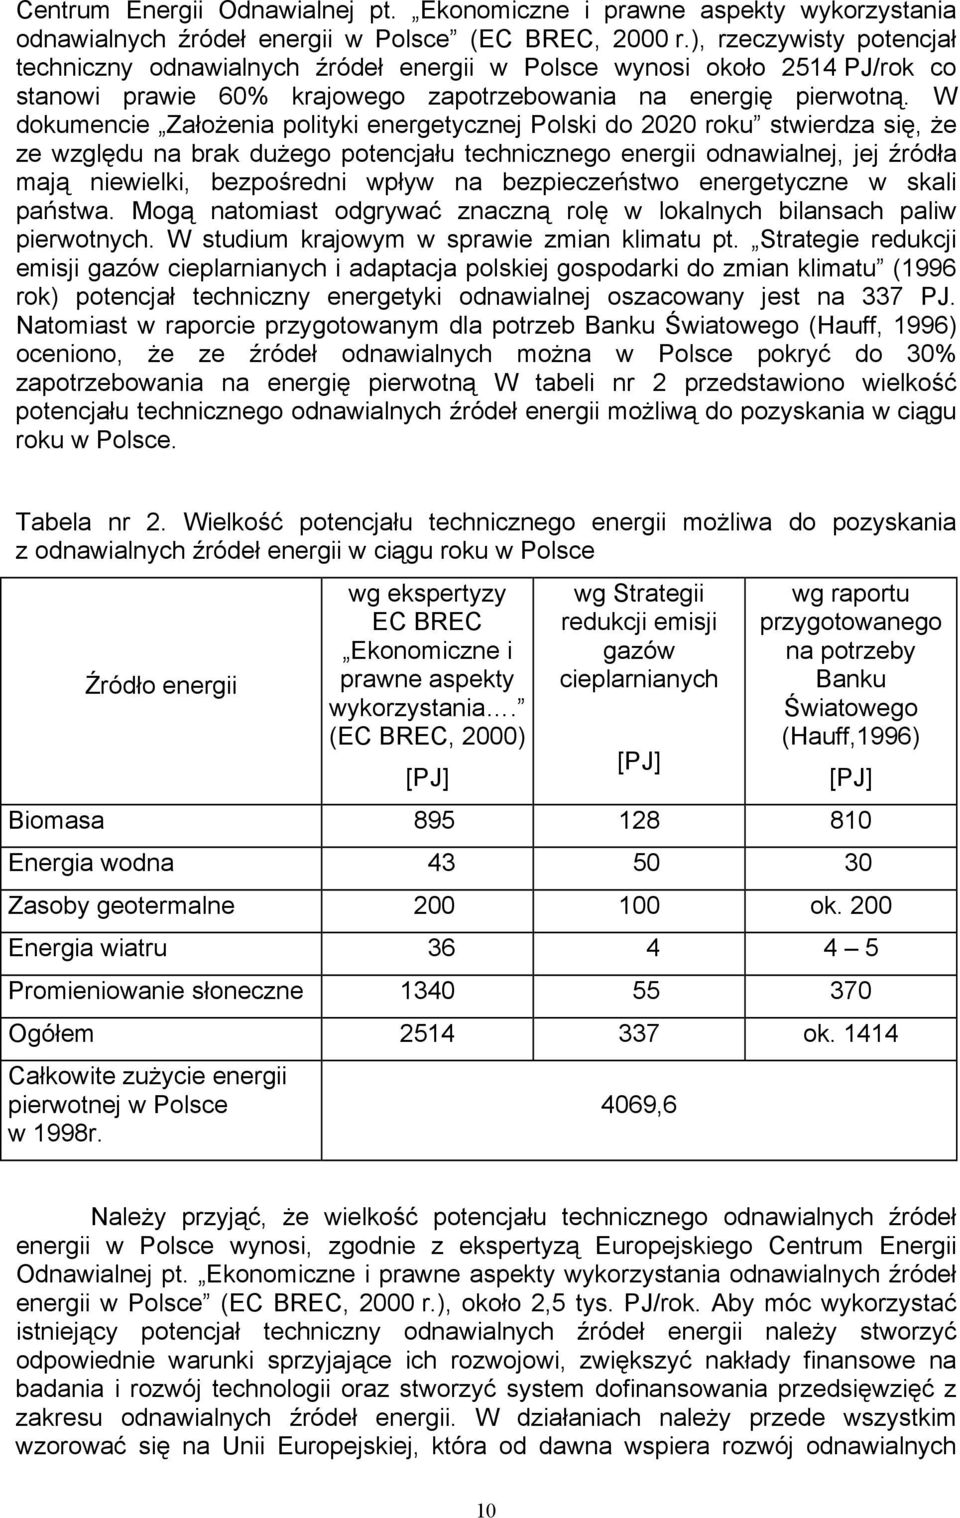 W dokumencie Założenia polityki energetycznej Polski do 2020 roku stwierdza się, że ze względu na brak dużego potencjału technicznego energii odnawialnej, jej źródła mają niewielki, bezpośredni wpływ